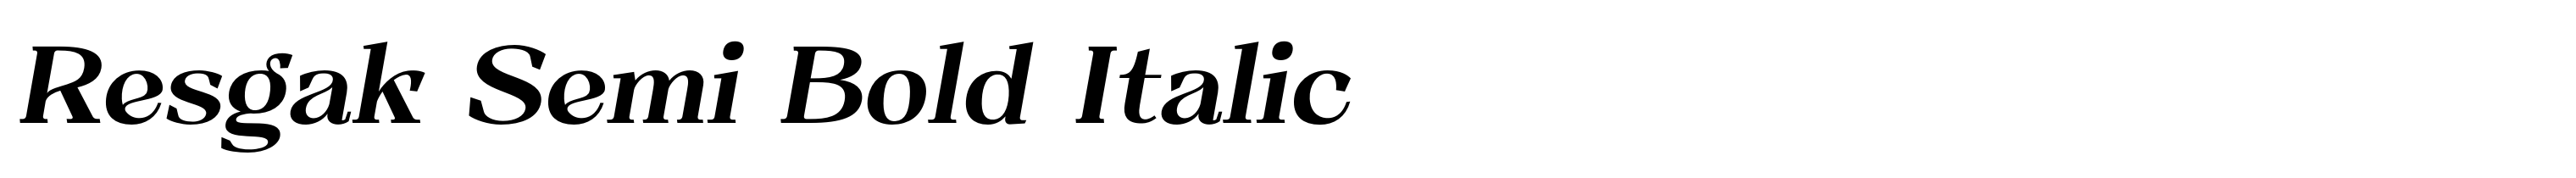 Resgak Semi Bold Italic